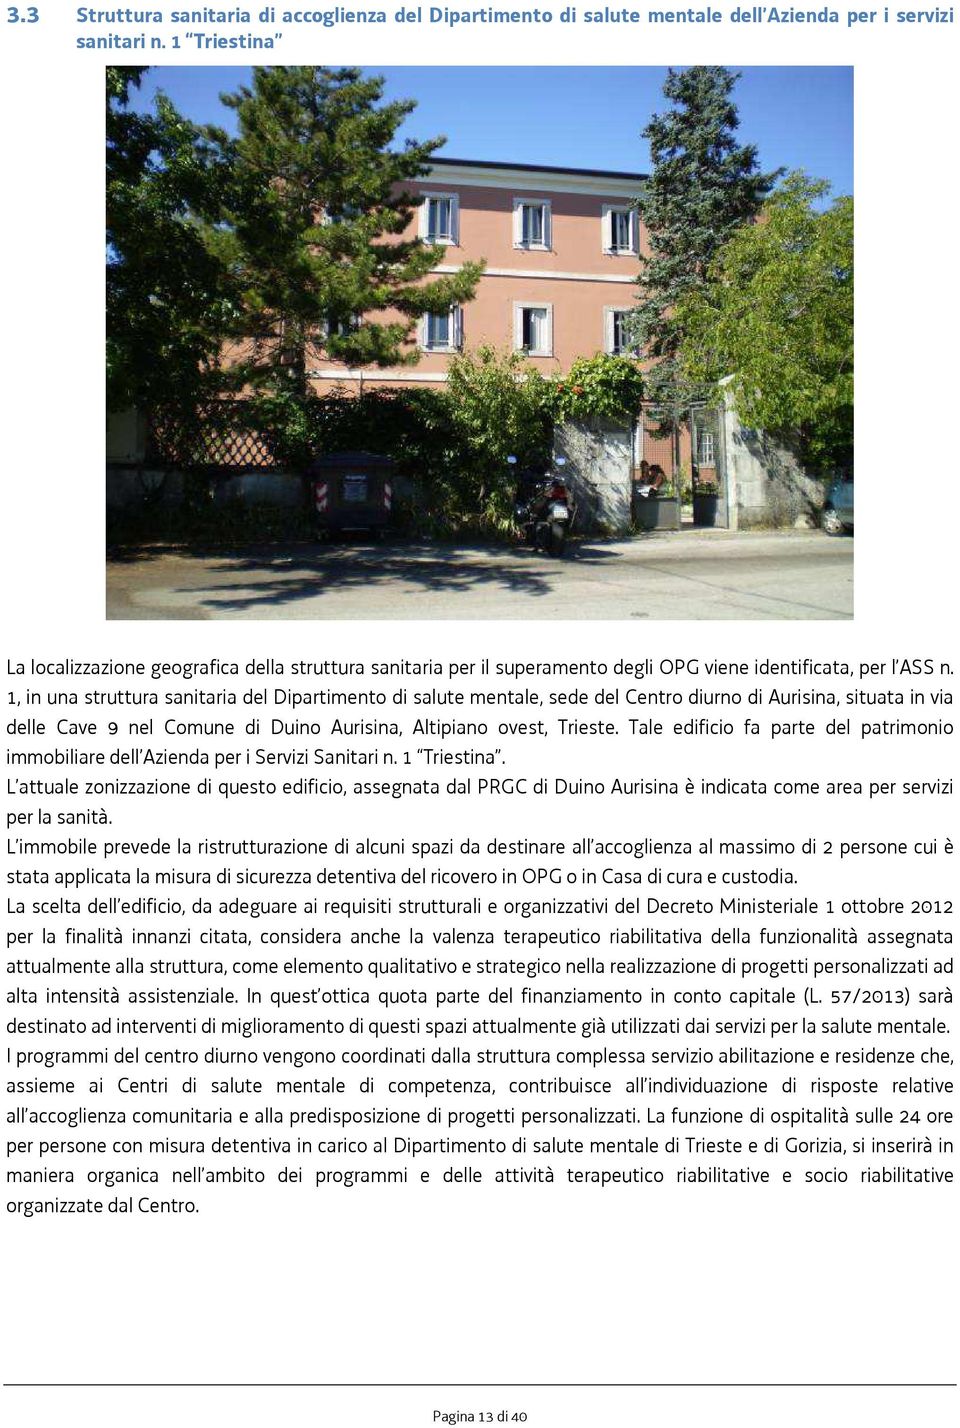 1, in una struttura sanitaria del Dipartimento di salute mentale, sede del Centro diurno di Aurisina, situata in via delle Cave 9 nel Comune di Duino Aurisina, Altipiano ovest, Trieste.